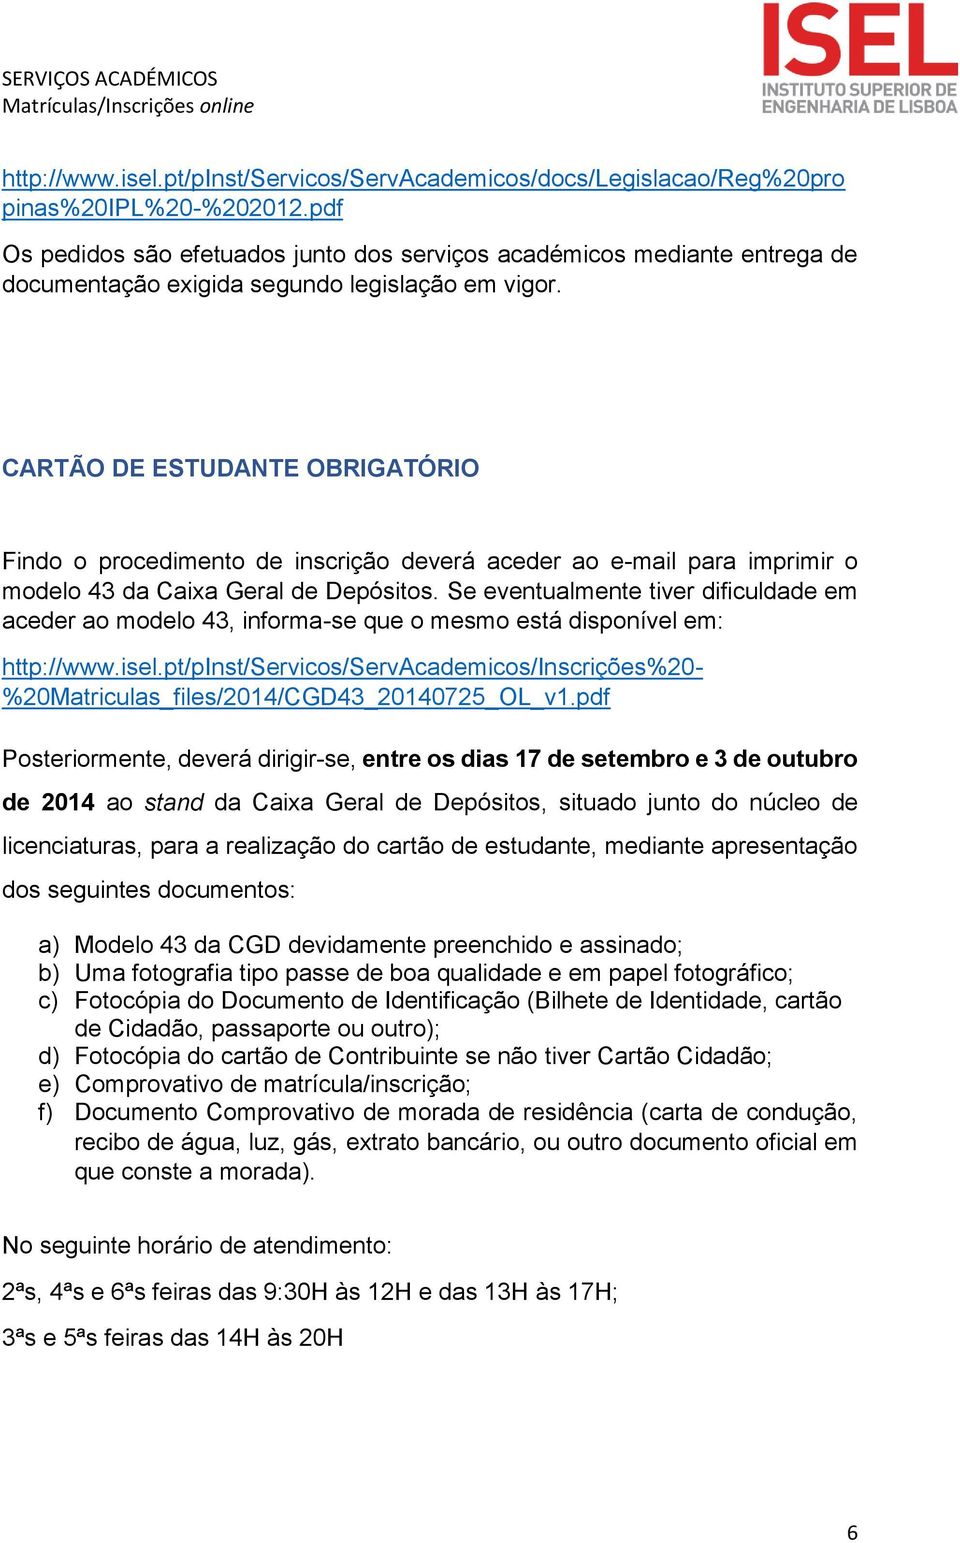 CARTÃO DE ESTUDANTE OBRIGATÓRIO Findo o procedimento de inscrição deverá aceder ao e-mail para imprimir o modelo 43 da Caixa Geral de Depósitos.